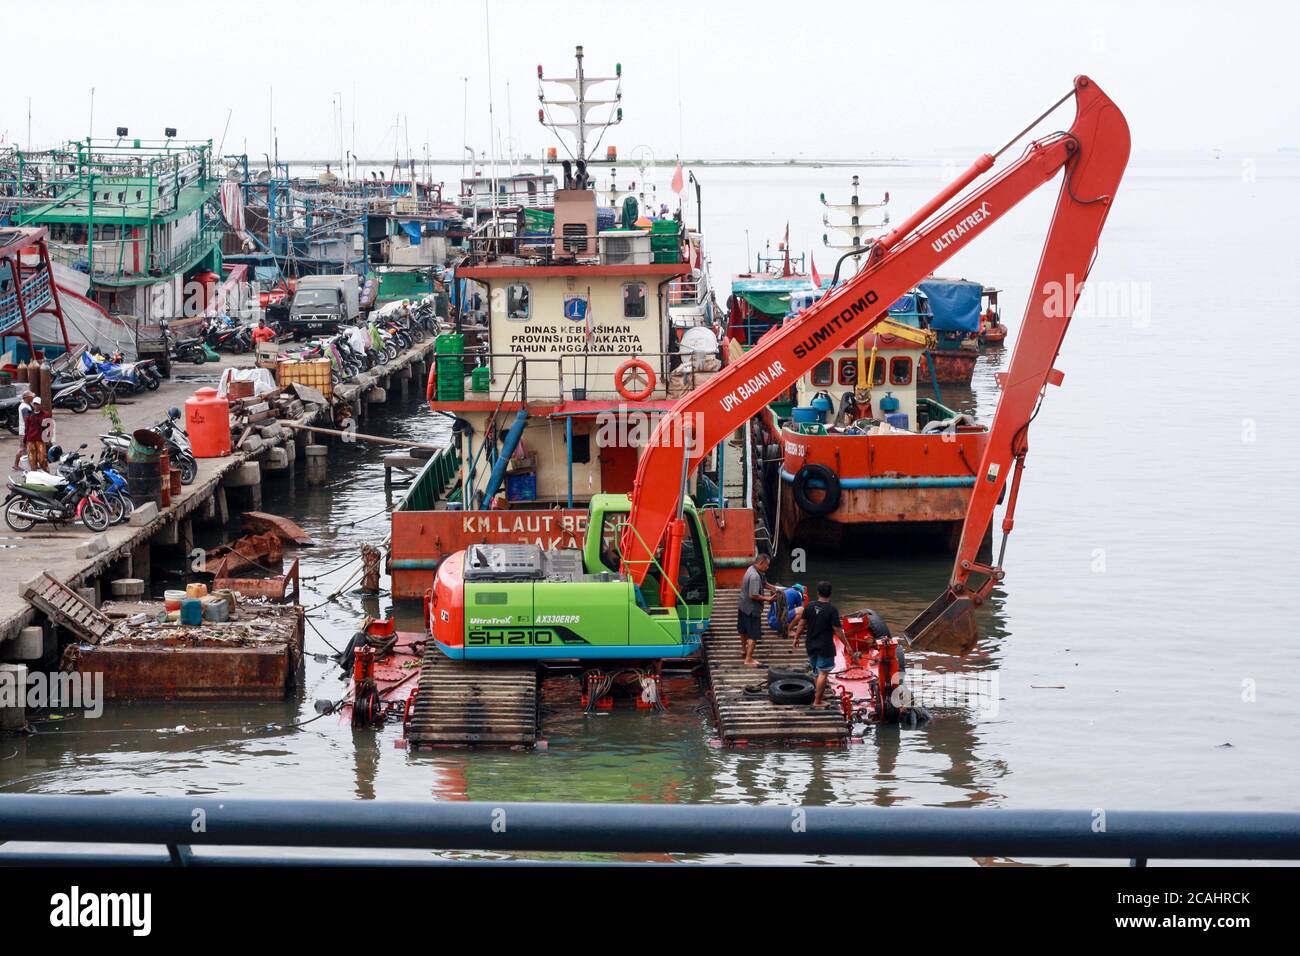 Yakarta, Indonesia - 21 de abril de 2019: Una excavadora operó para limpiar la basura en el puerto de Muara Angke, al norte de Yakarta. Foto de stock